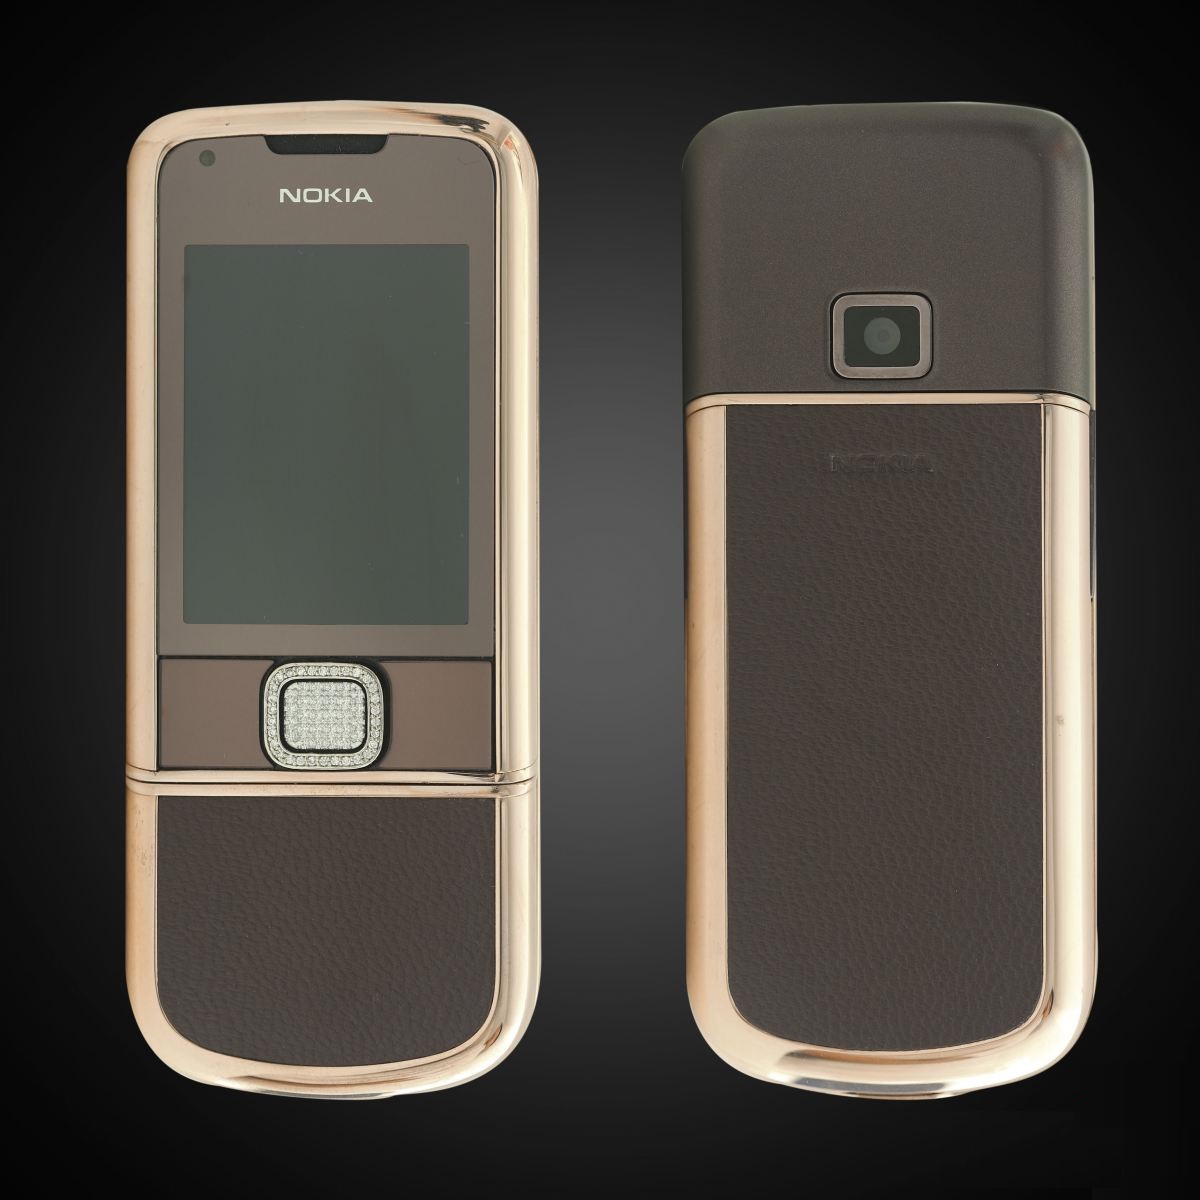 Nokia 8800 là mẫu điện thoại đình đám với thiết kế sang trọng, đẳng cấp. Hình nền điện thoại Nokia 8800 sẽ khiến bạn trầm trồ vì sự đẹp mắt và tinh tế của nó. Hãy nhanh tay truy cập vào hình ảnh để khám phá thêm về mẫu điện thoại này nhé!